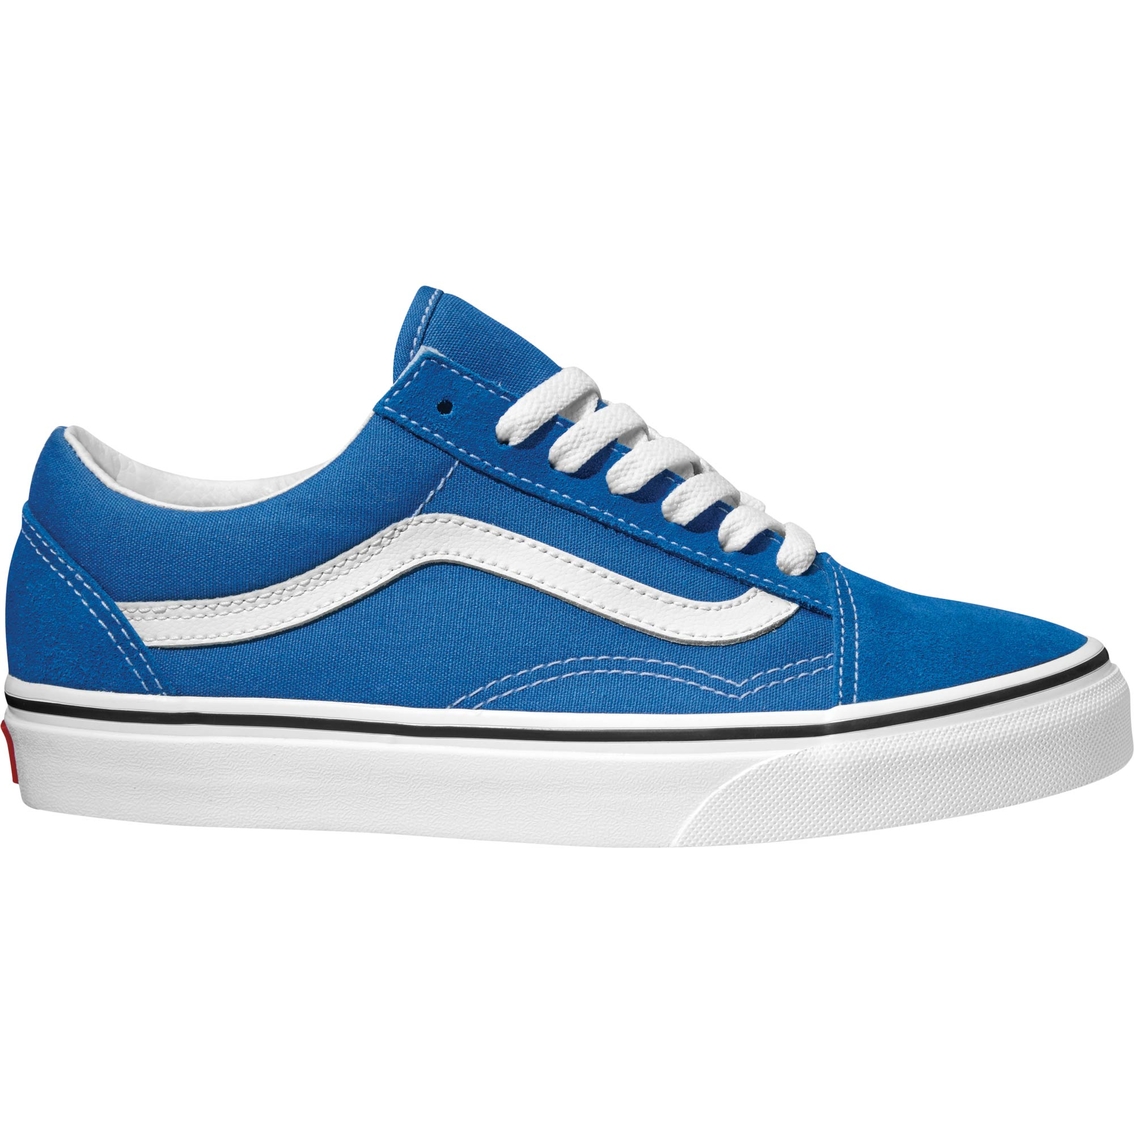 Vans Women's Old Skool Blue Sneakers | Sneakers & Lifestyle | Shop The ...